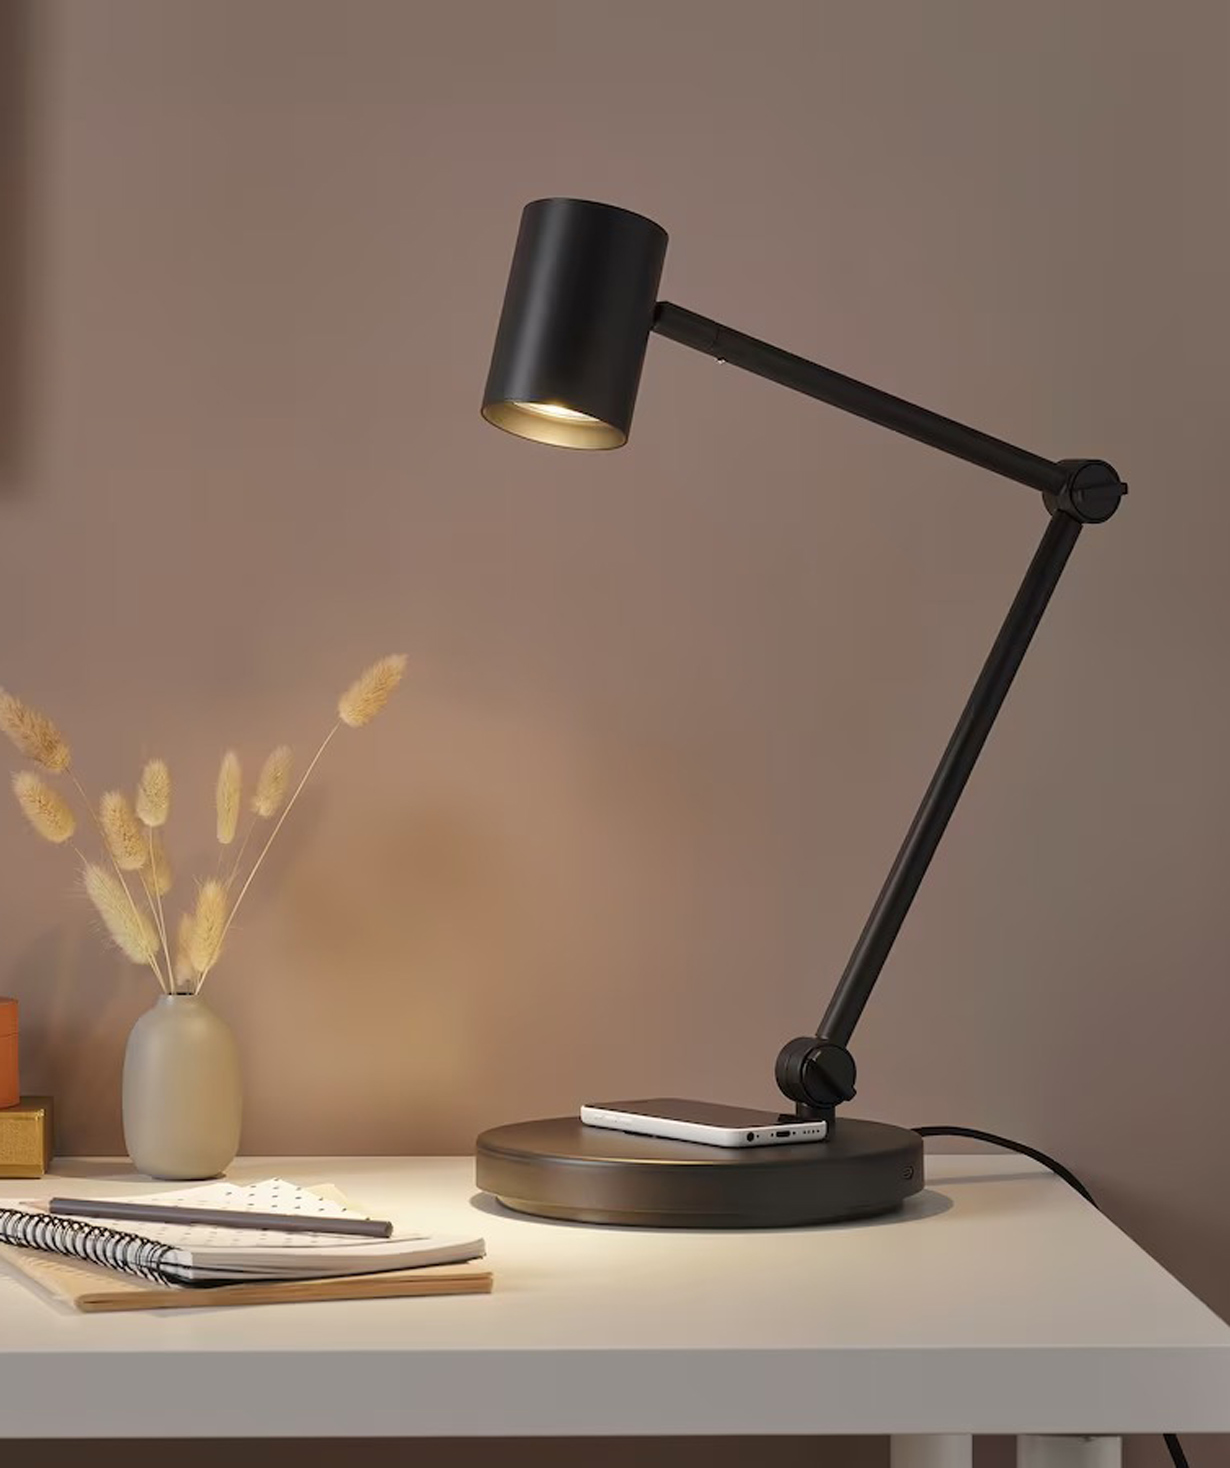 Աշխատանքային լամպ ''NYMÅNE'' ներկառուցված լիցքավորիչով